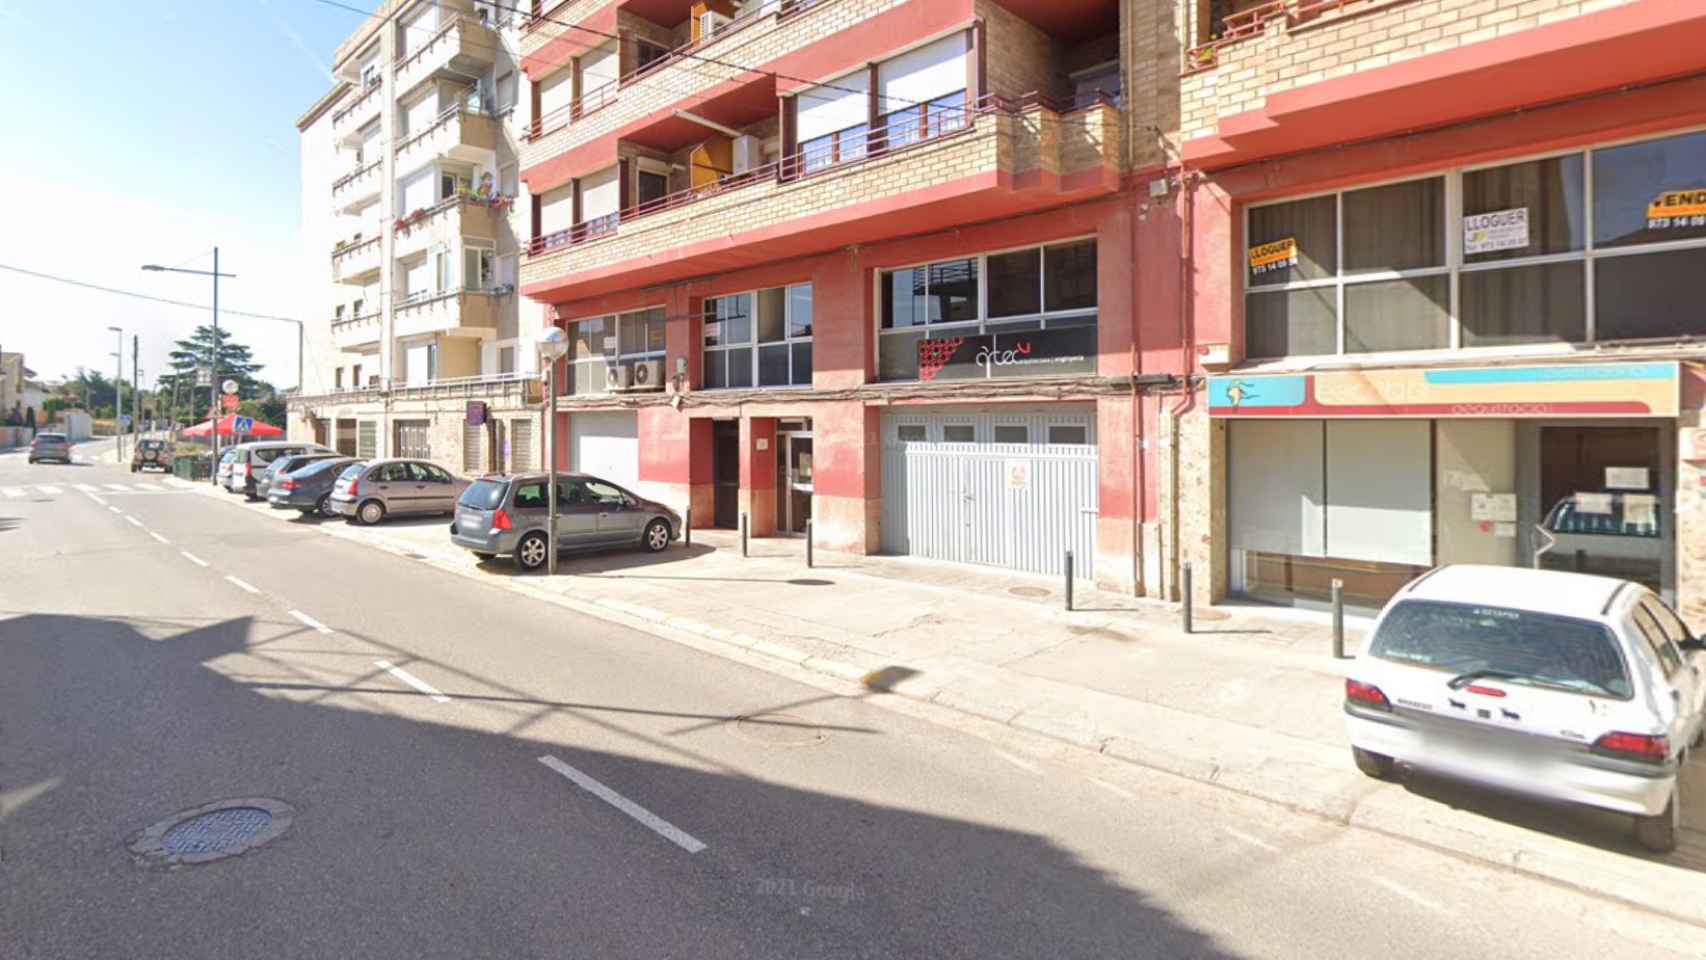 La avenida Sardana de Les Borges Blanques (Lleida), donde se habría producido la agresión con arma blanca / GOOGLE STREET VIEW